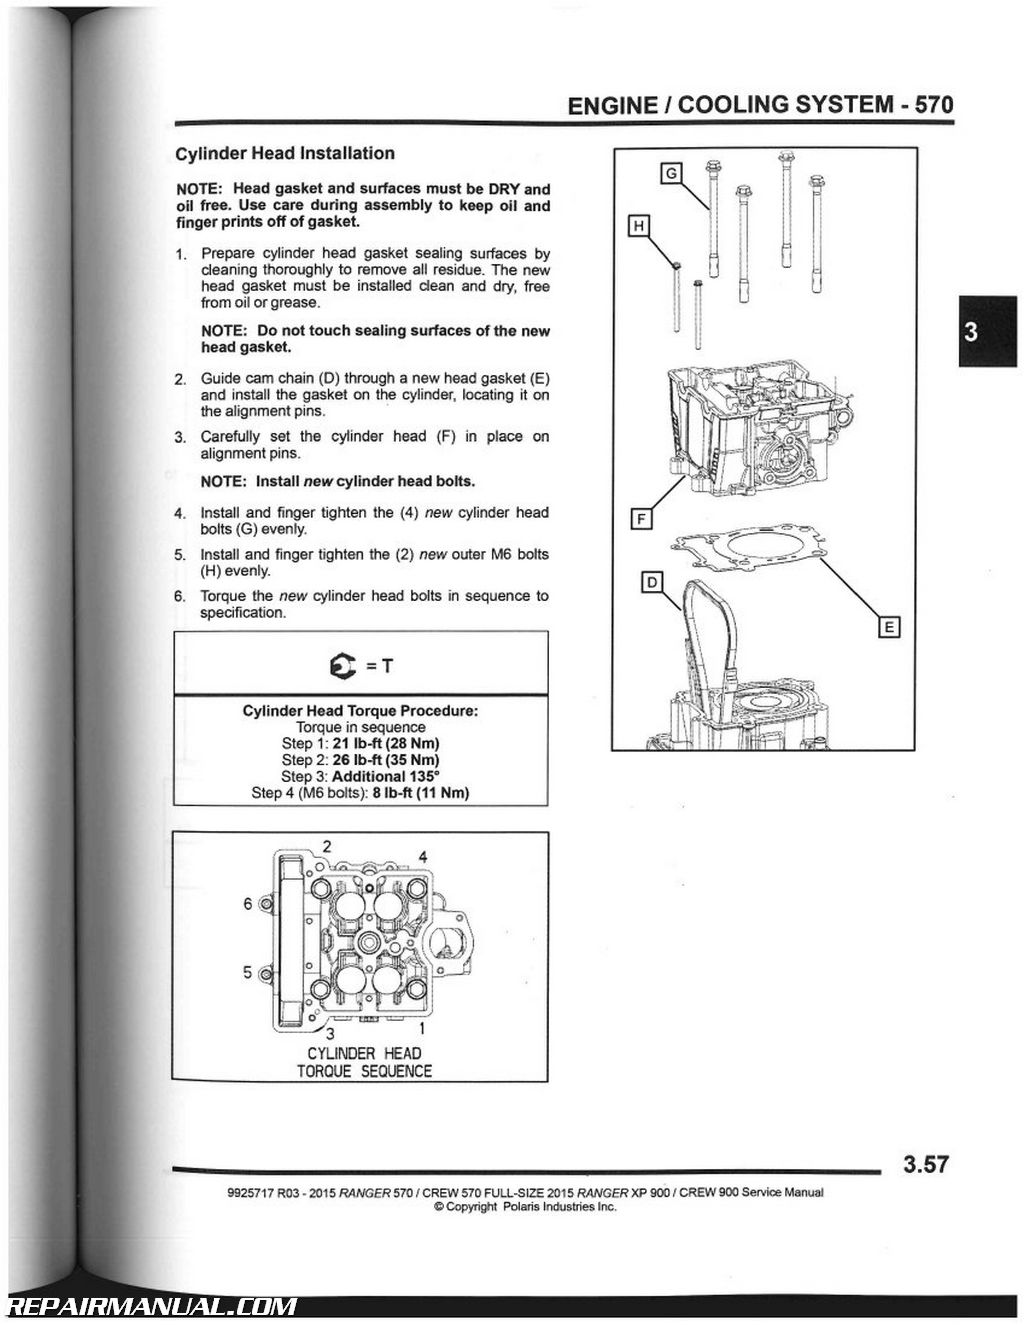 Ford ranger repair manual download